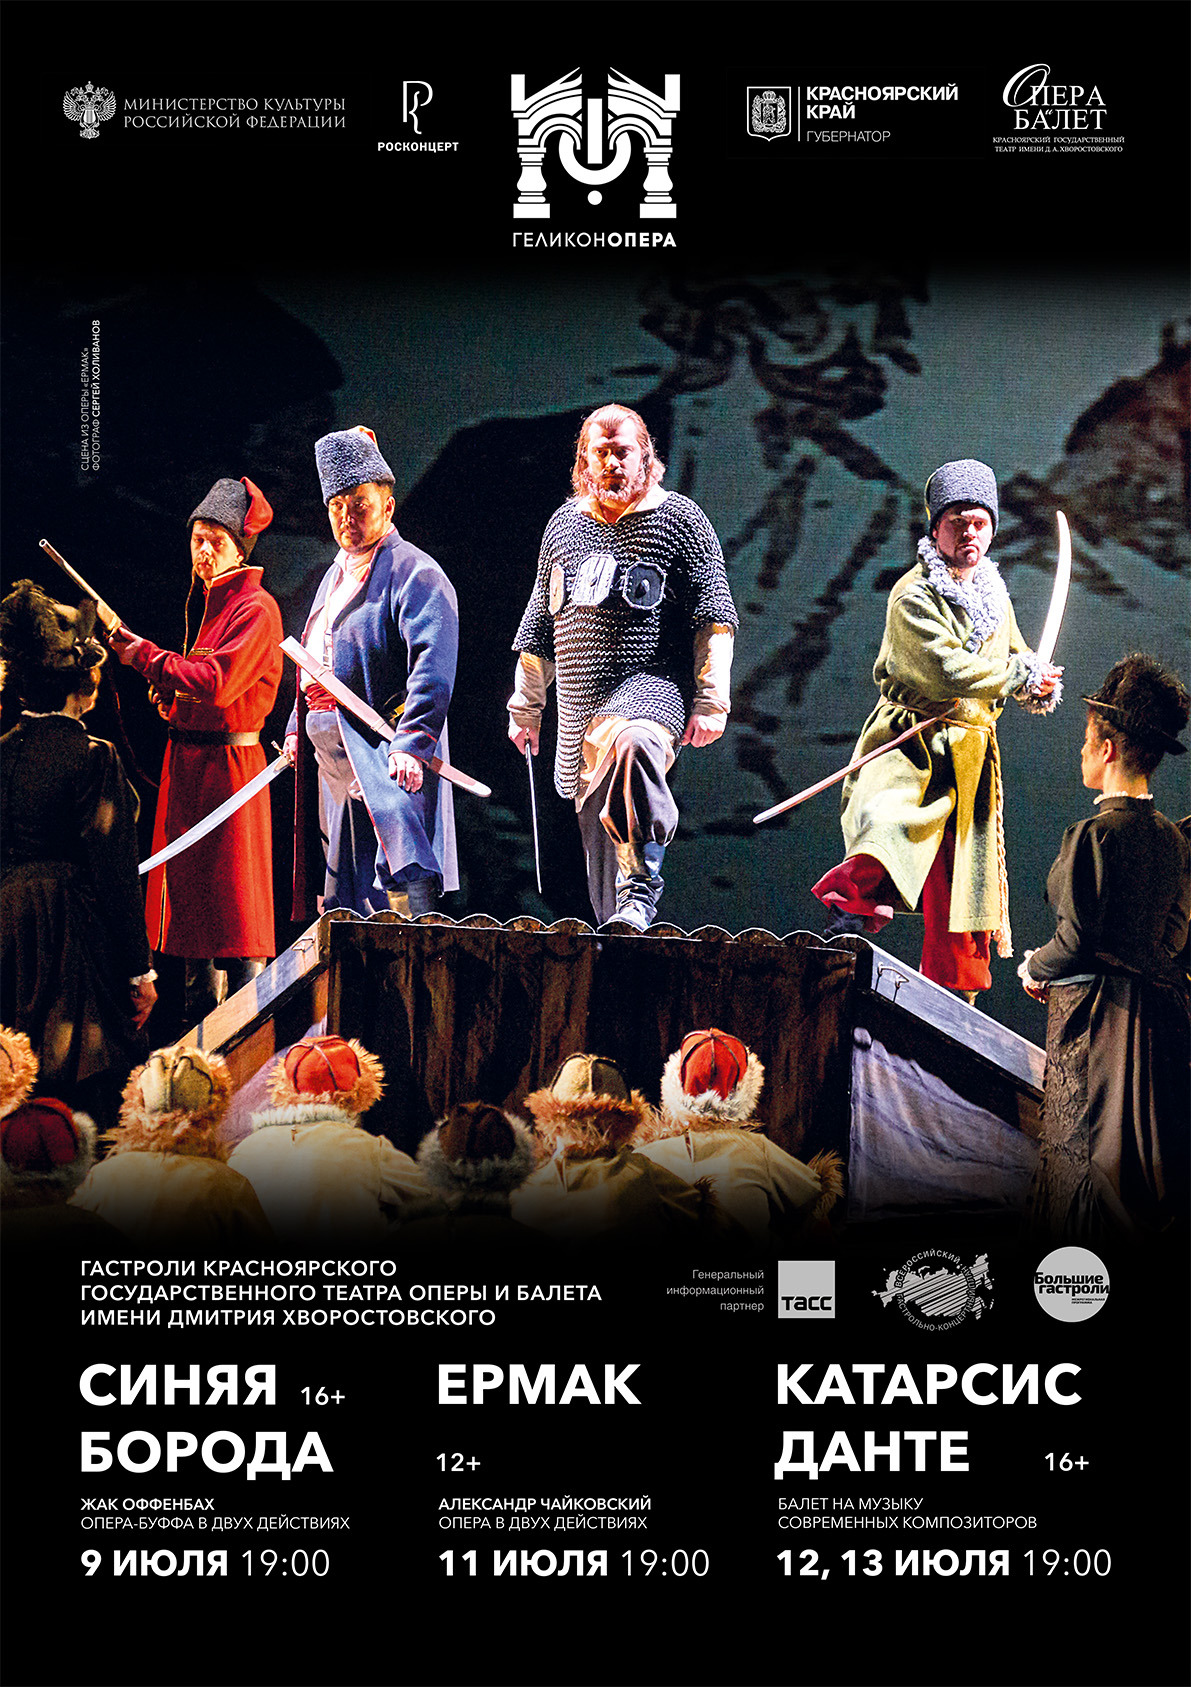 Красноярский театр оперы и балета везёт зрителей в Геликон!